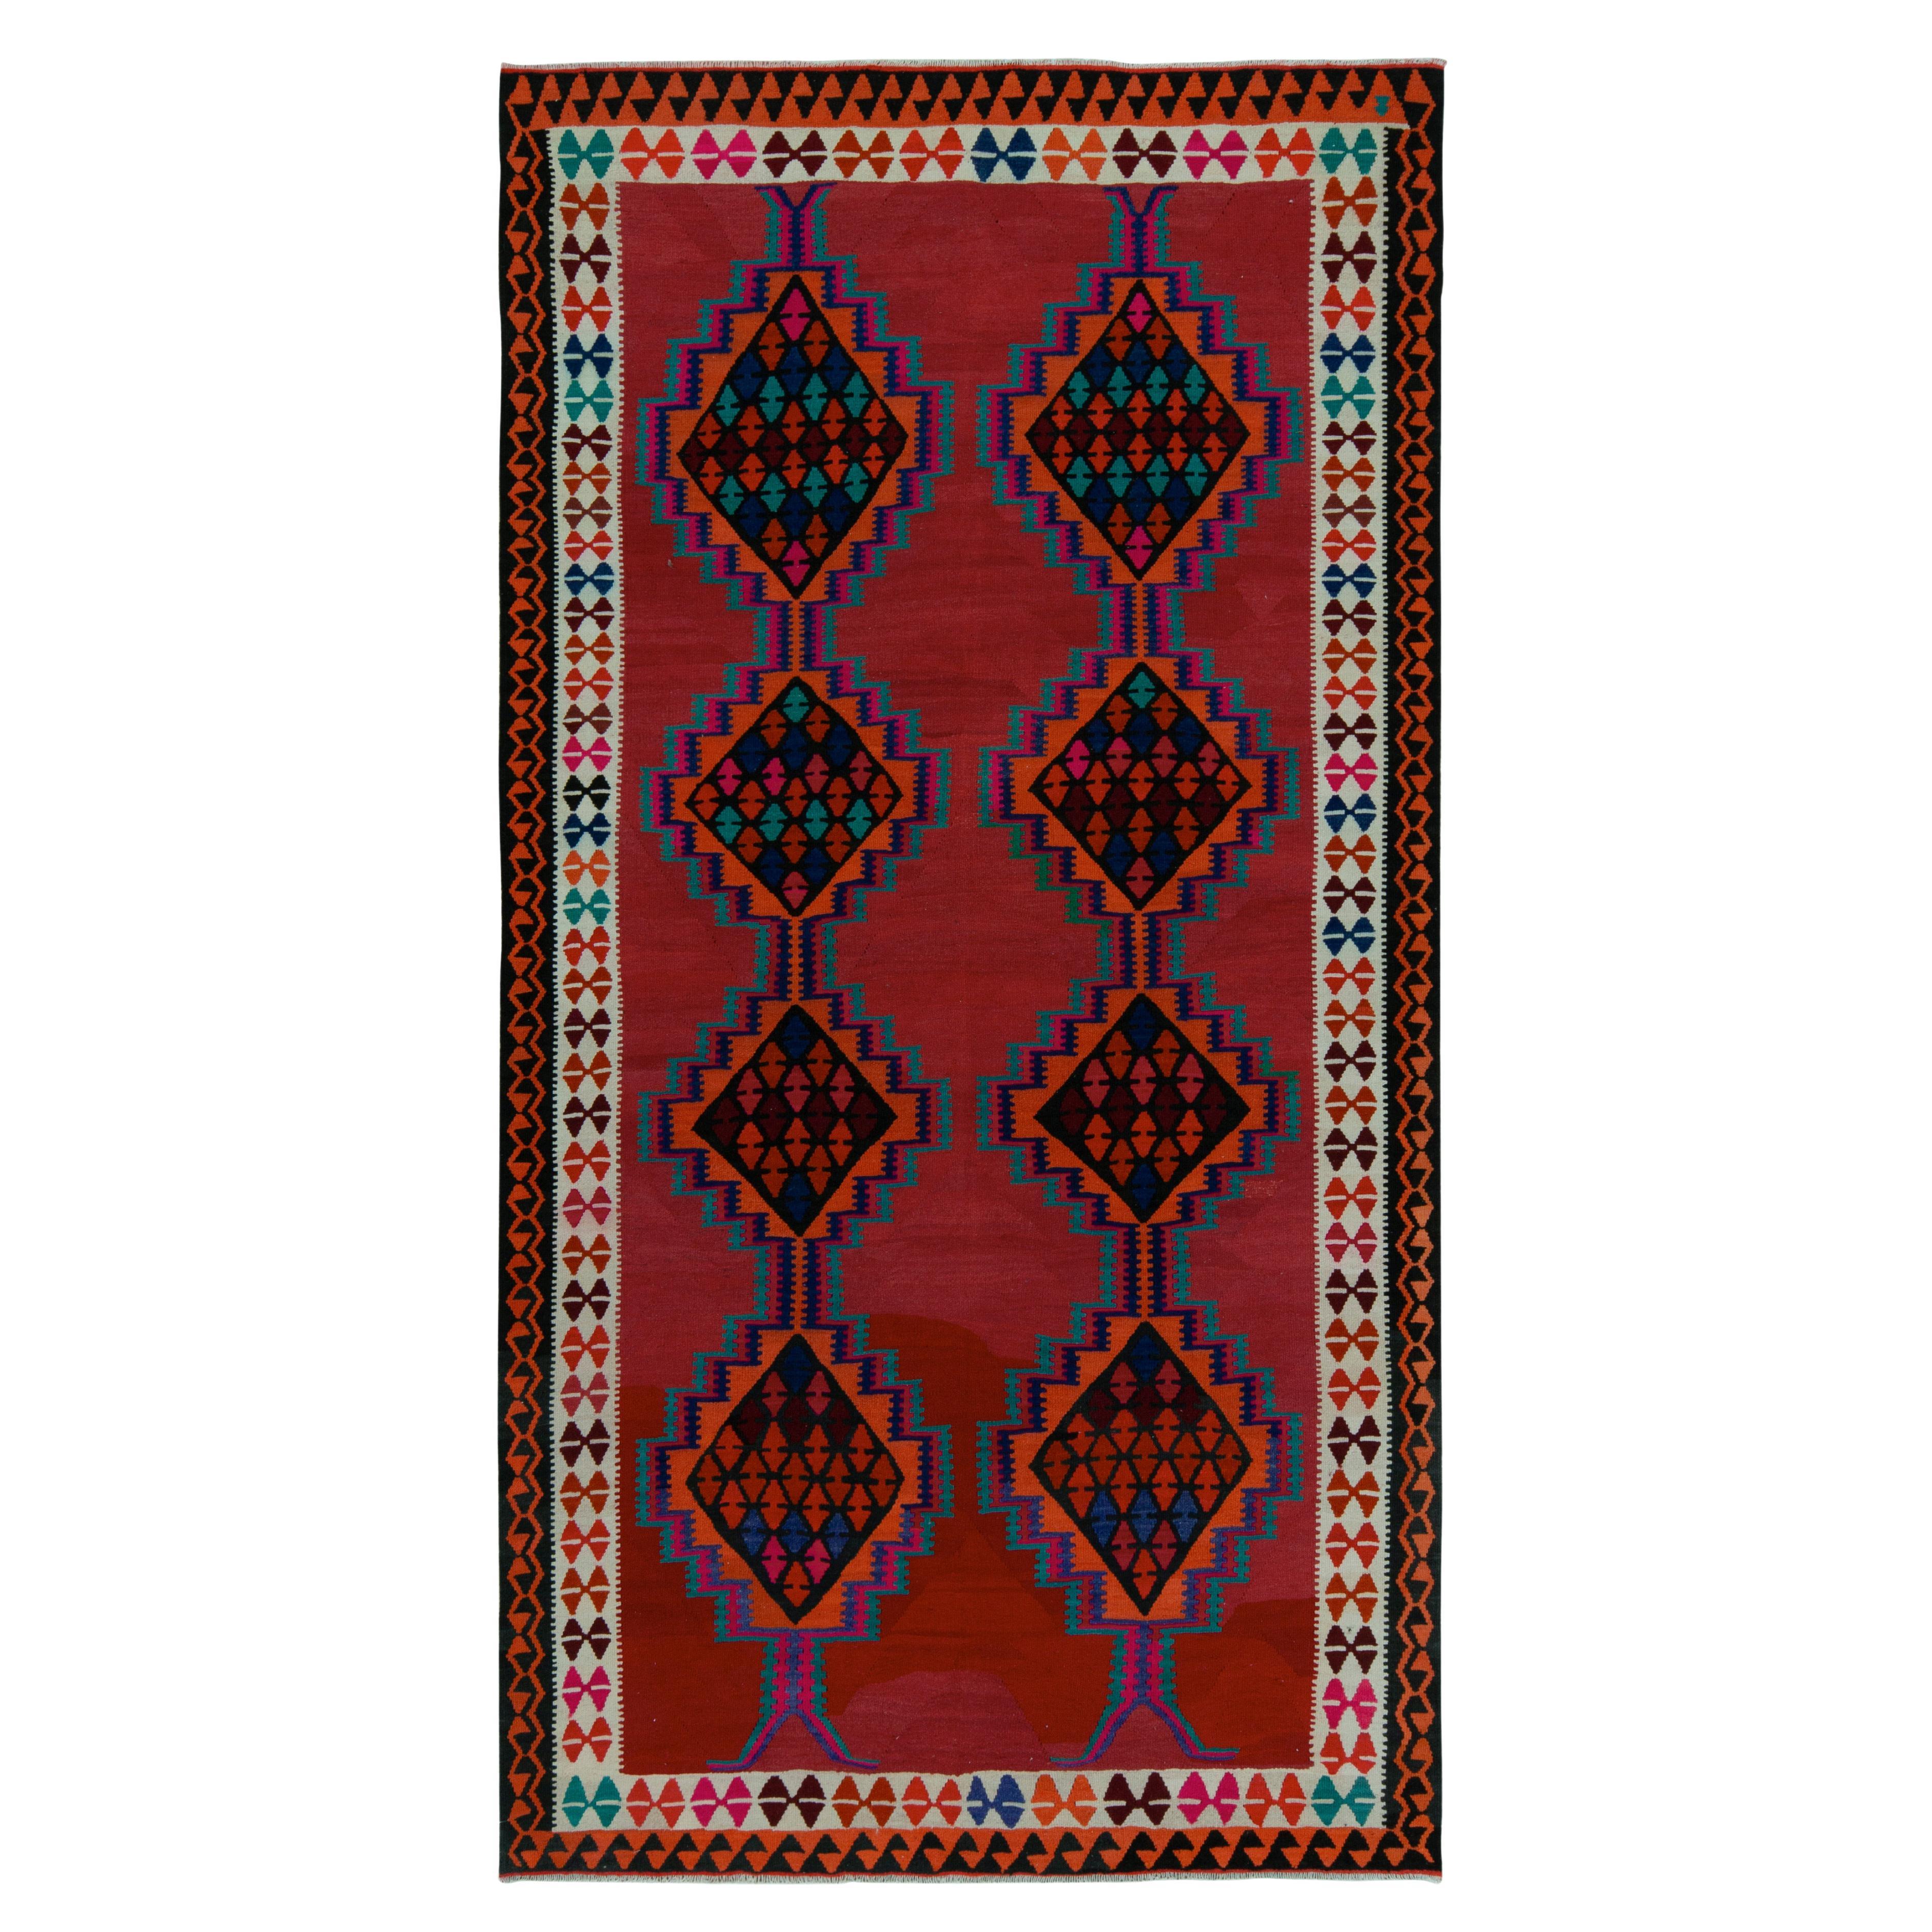 1950er Jahre Vintage-Kelim-Teppich in Rot mit bunten geometrischen Mustern von Teppich & Kelim